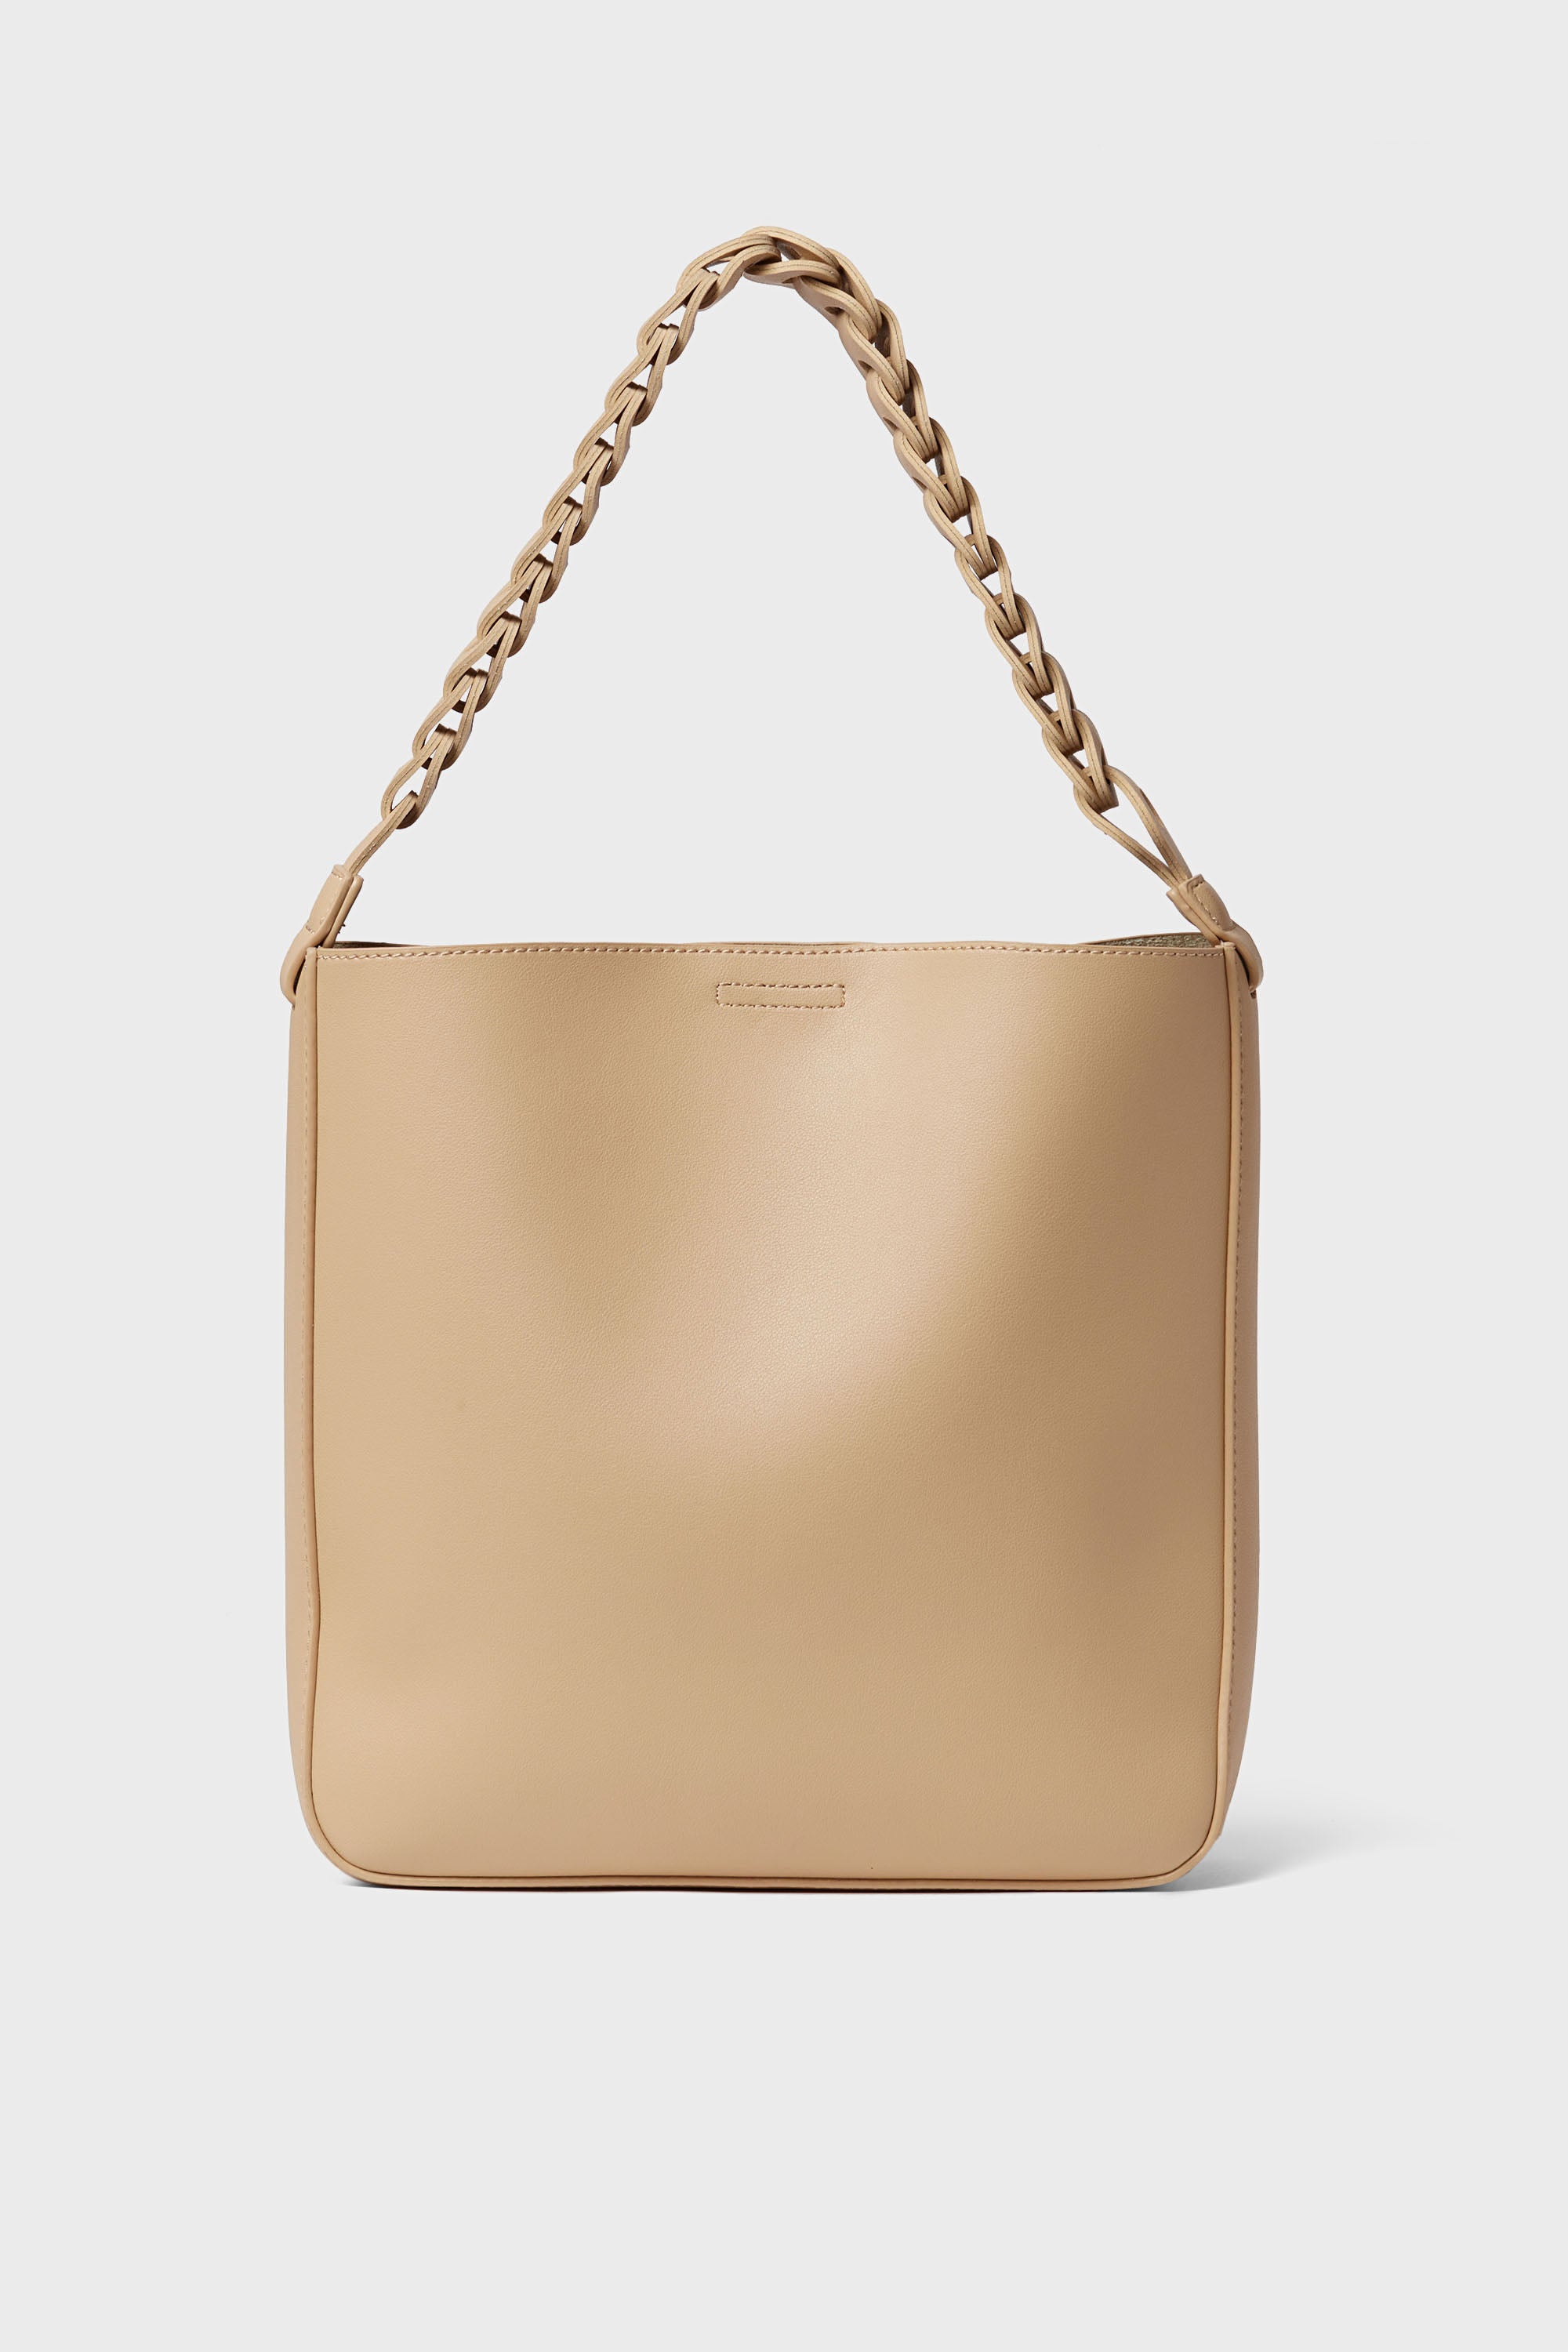 Moda Luxe Handbags